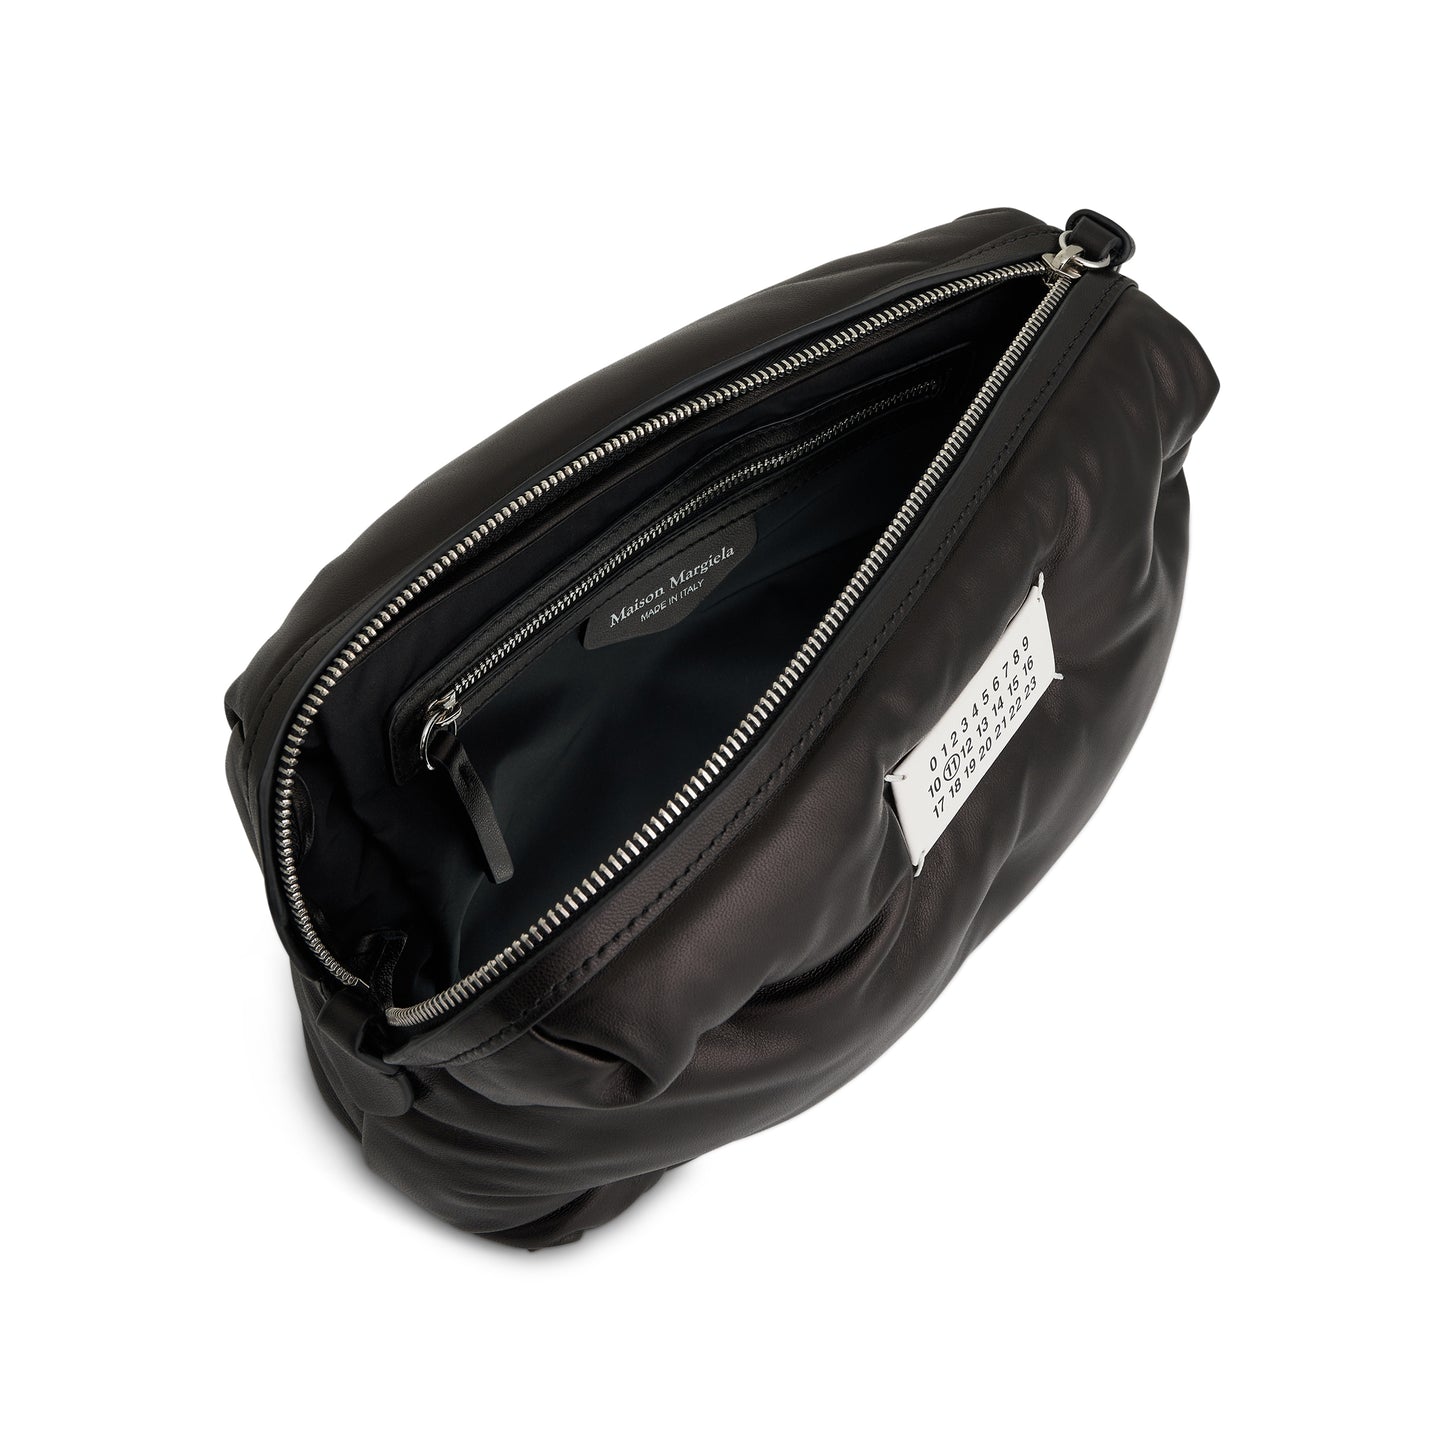 Leather Nappa Glam Slam Camera Bag in Black